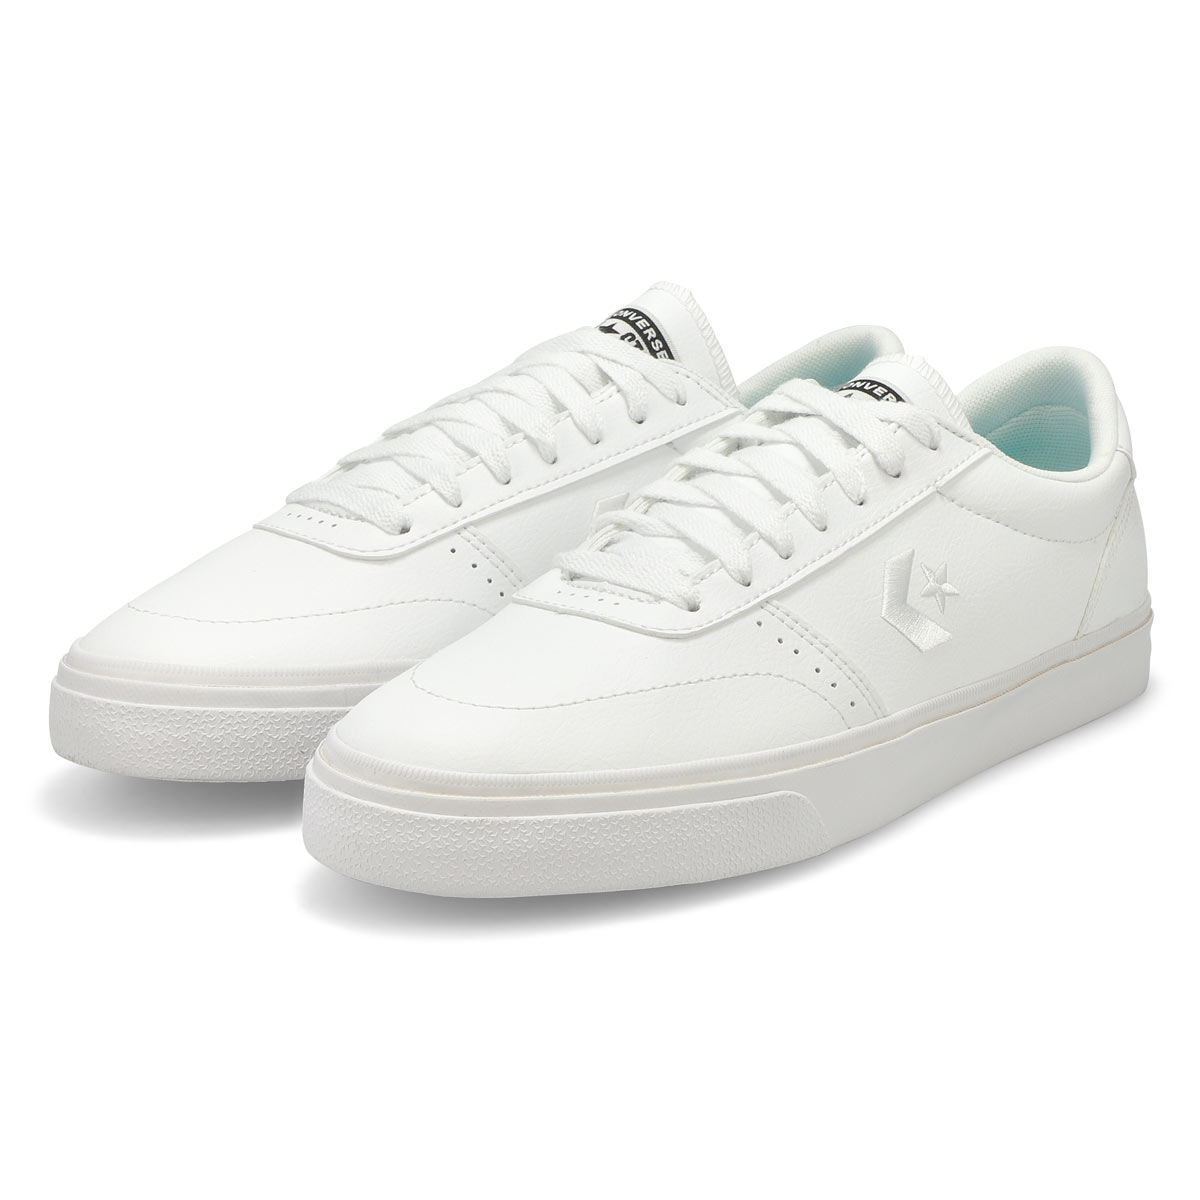 Men's BOULEVARD Sneaker - White/White